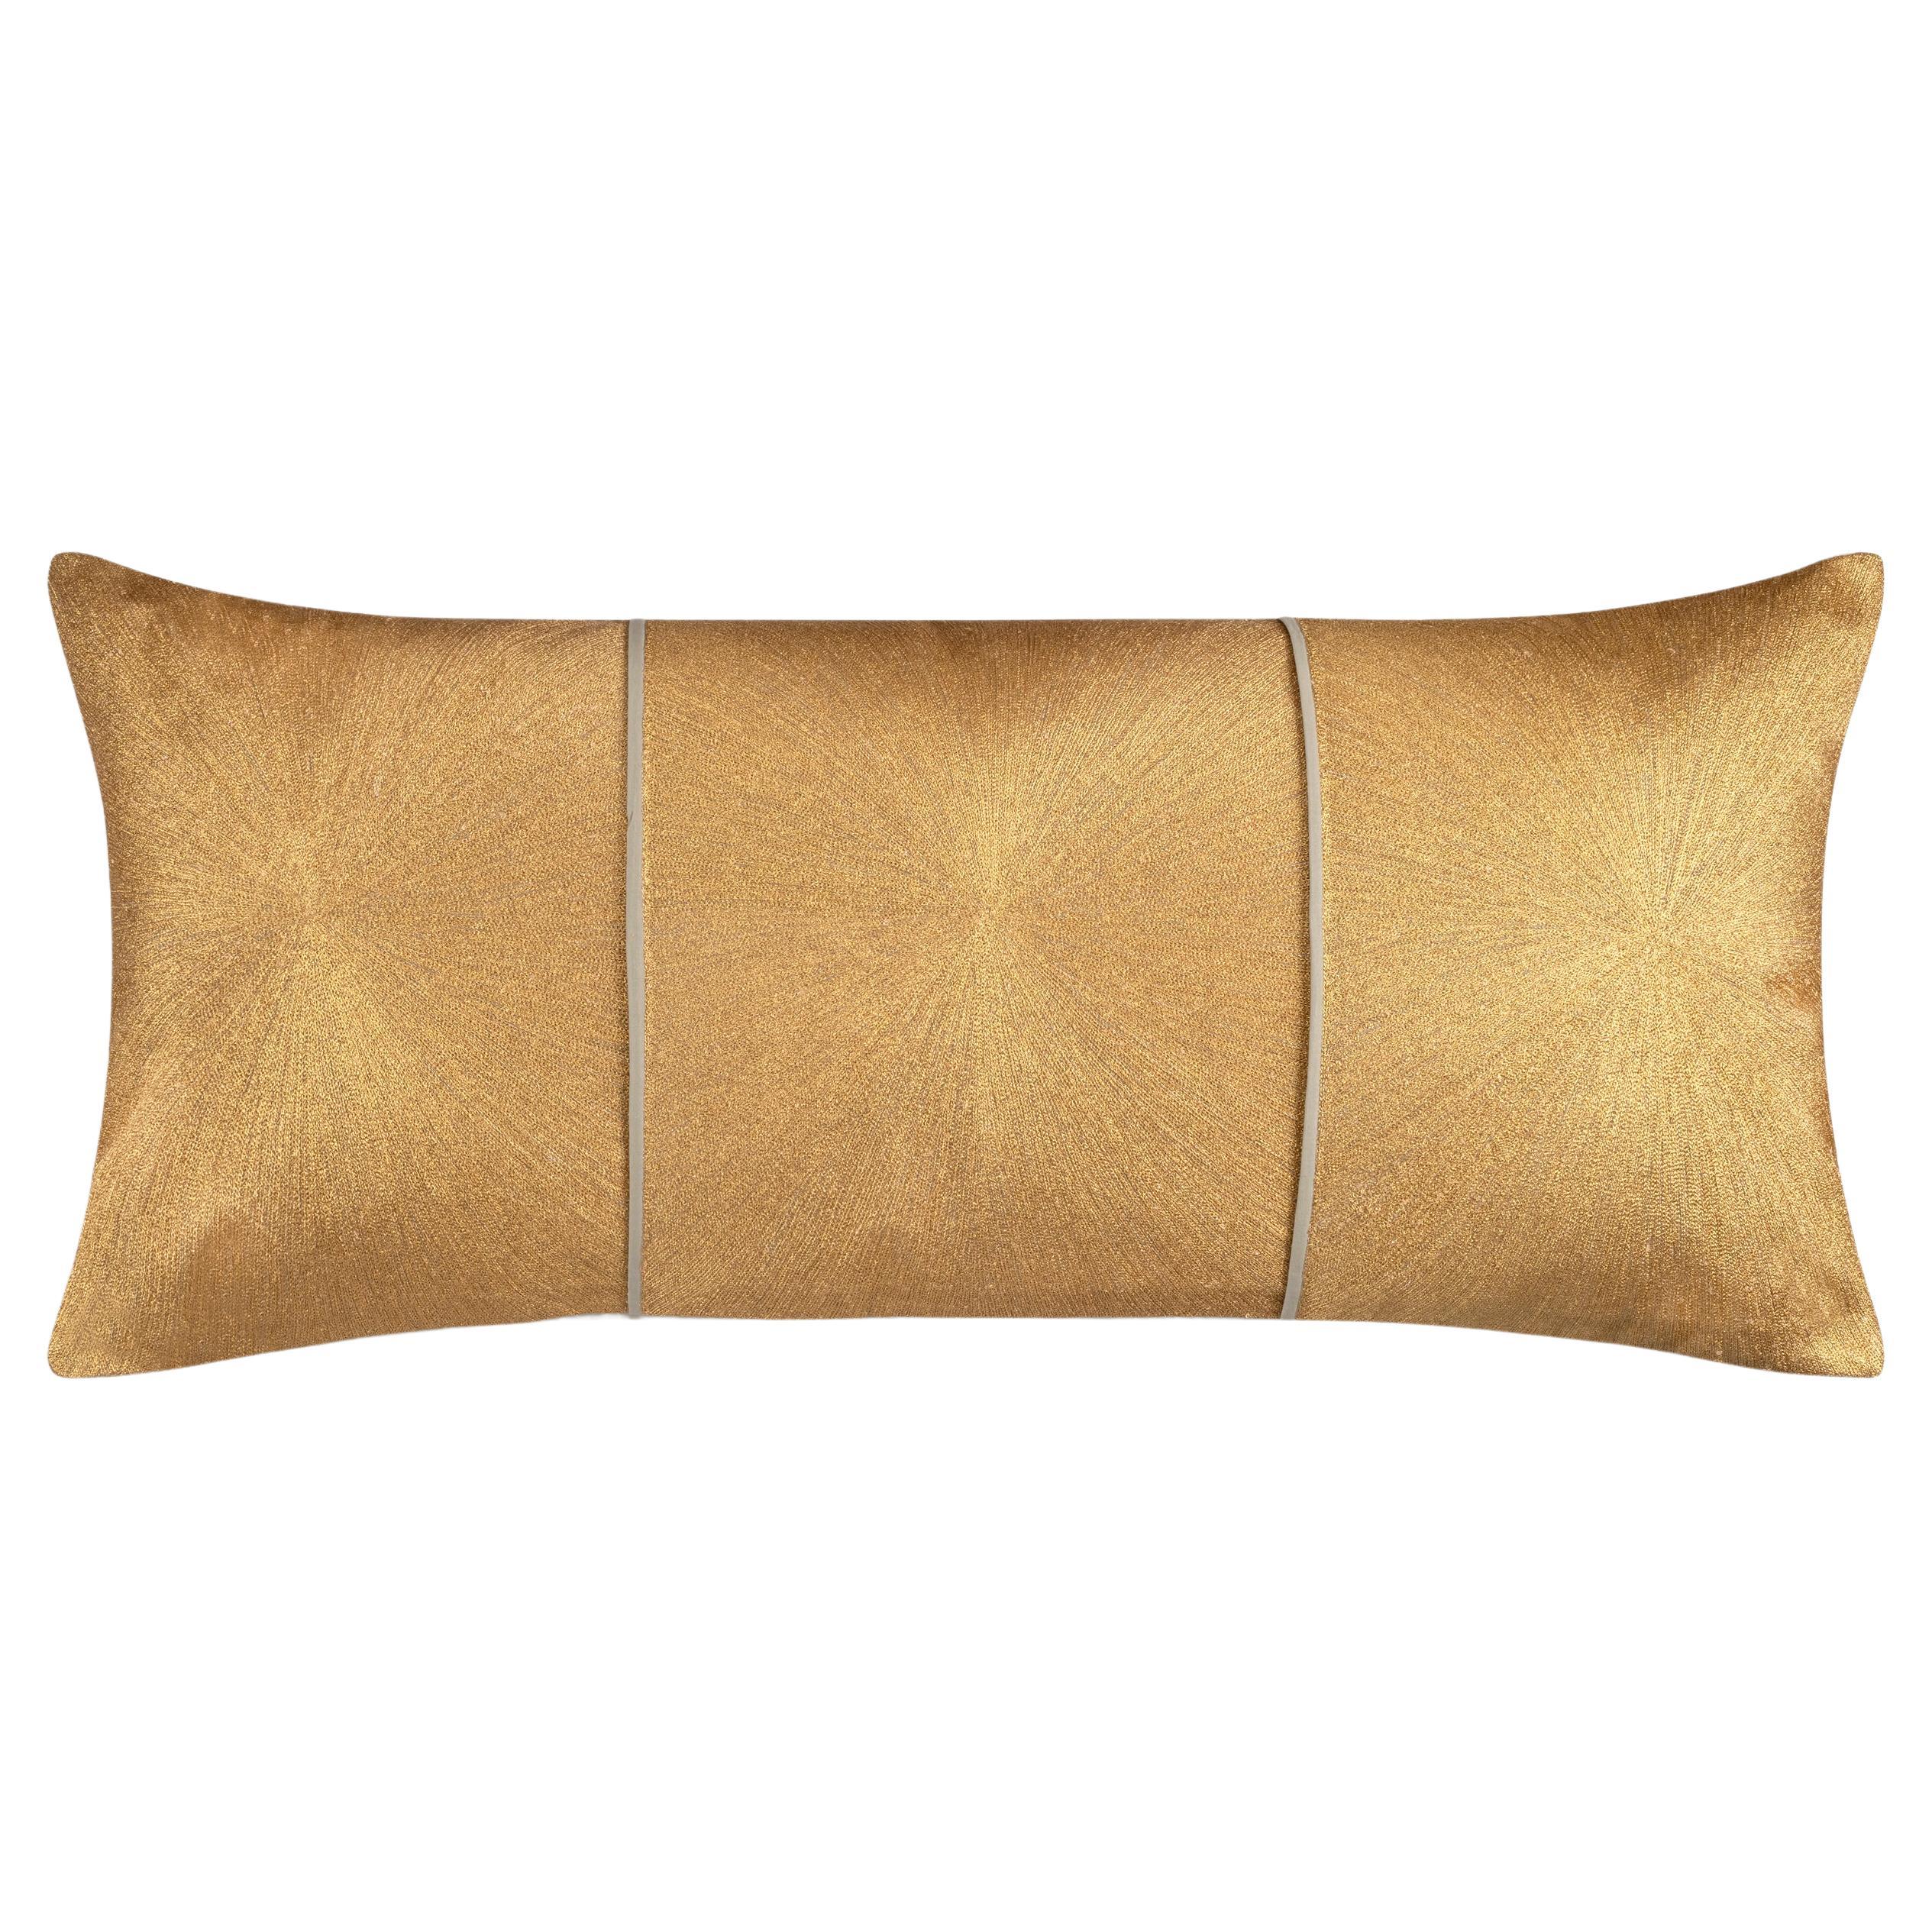 Nimbus Lumbar Pillow, Light Brown Linen